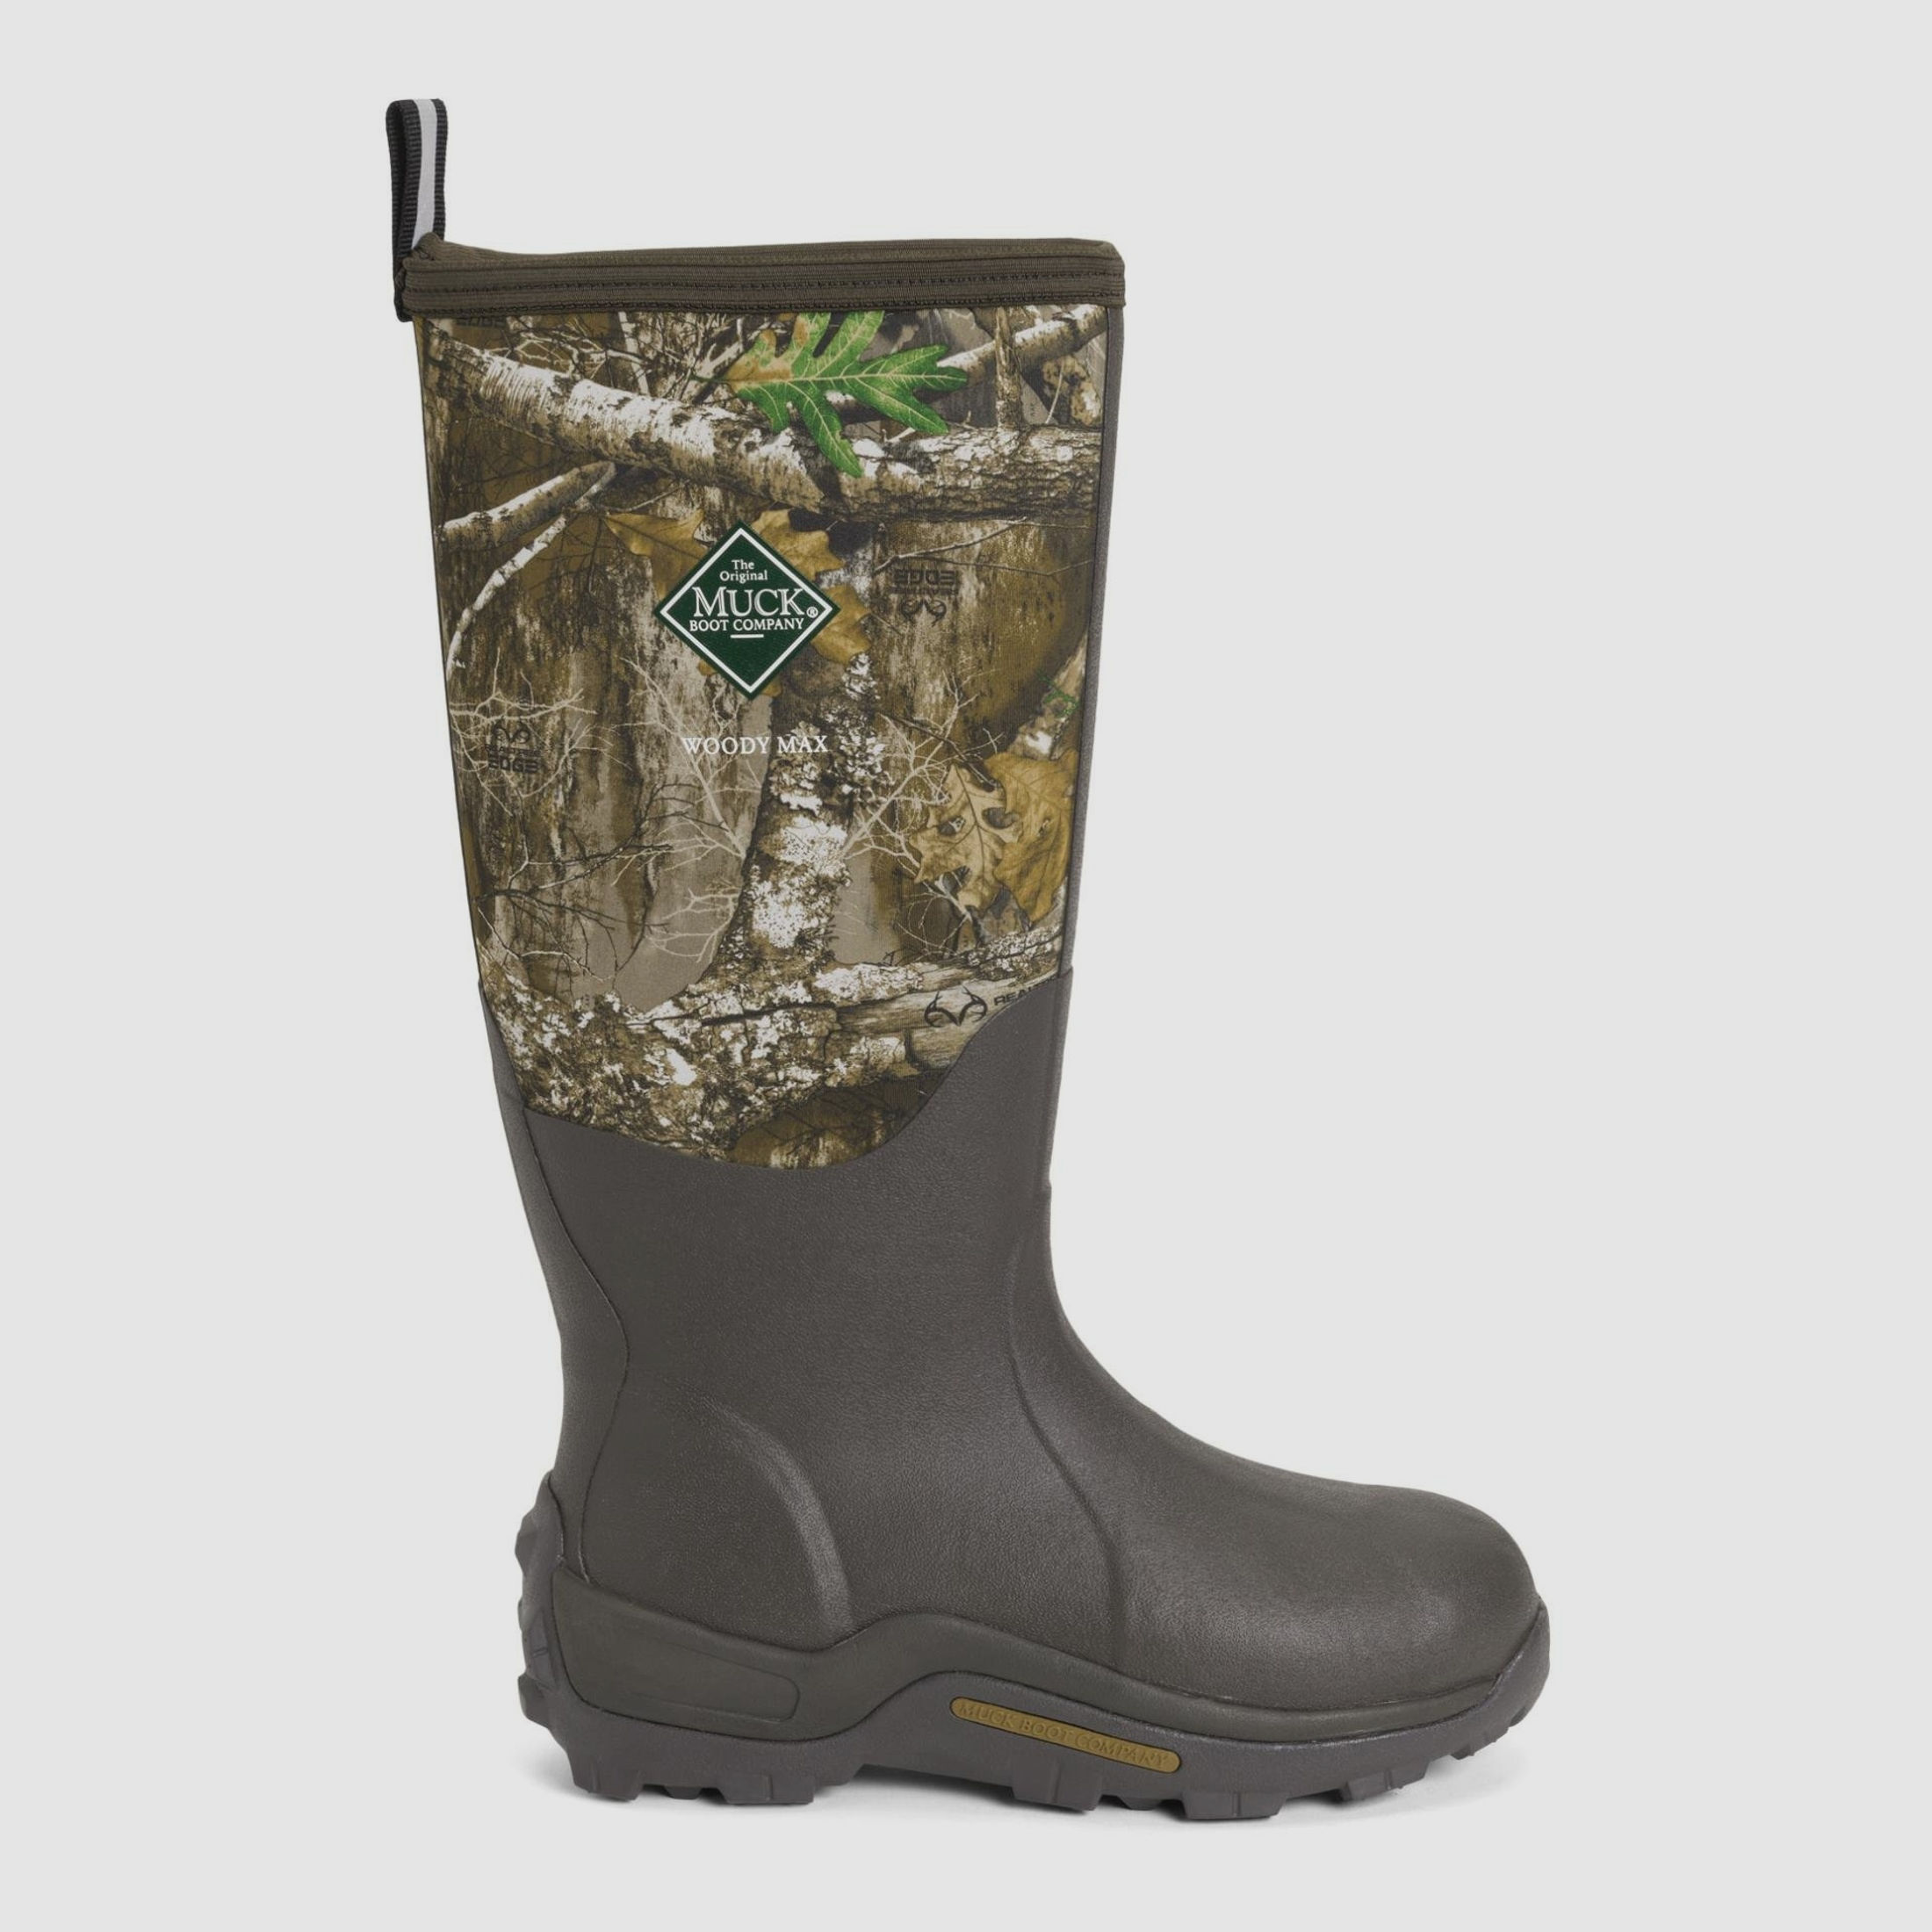 The Original Muck Boot Company Gummistiefel Herren Woody Max - camouflage  41